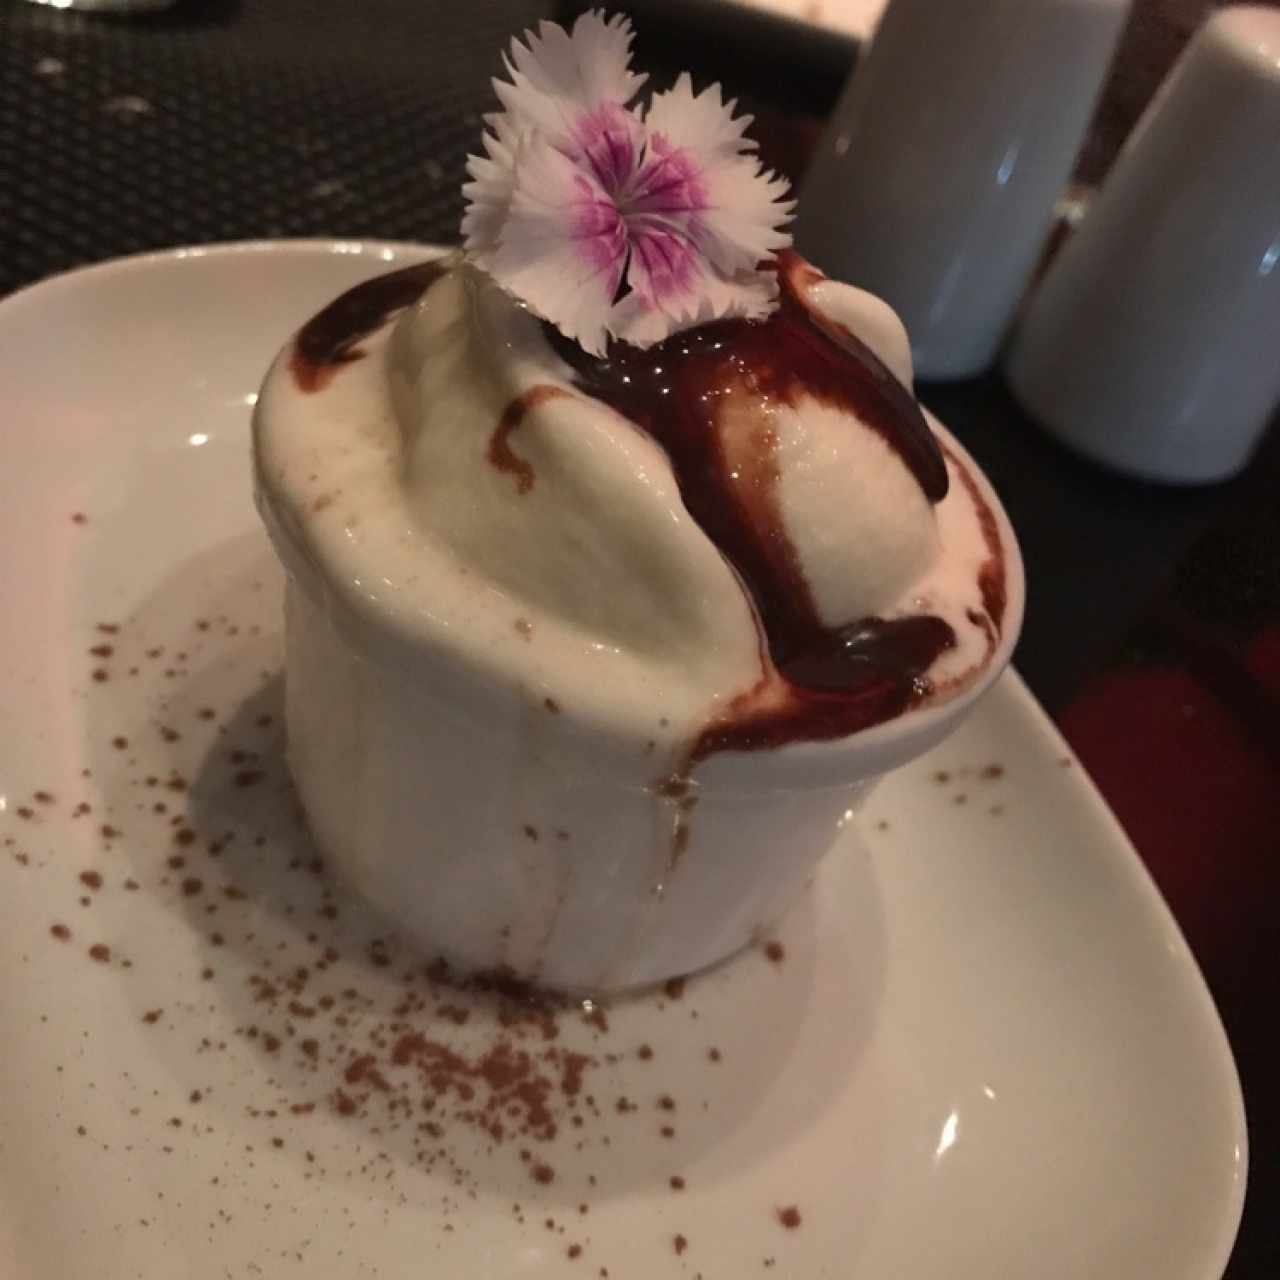 Volcán de chocolate tibio con helado de vainilla